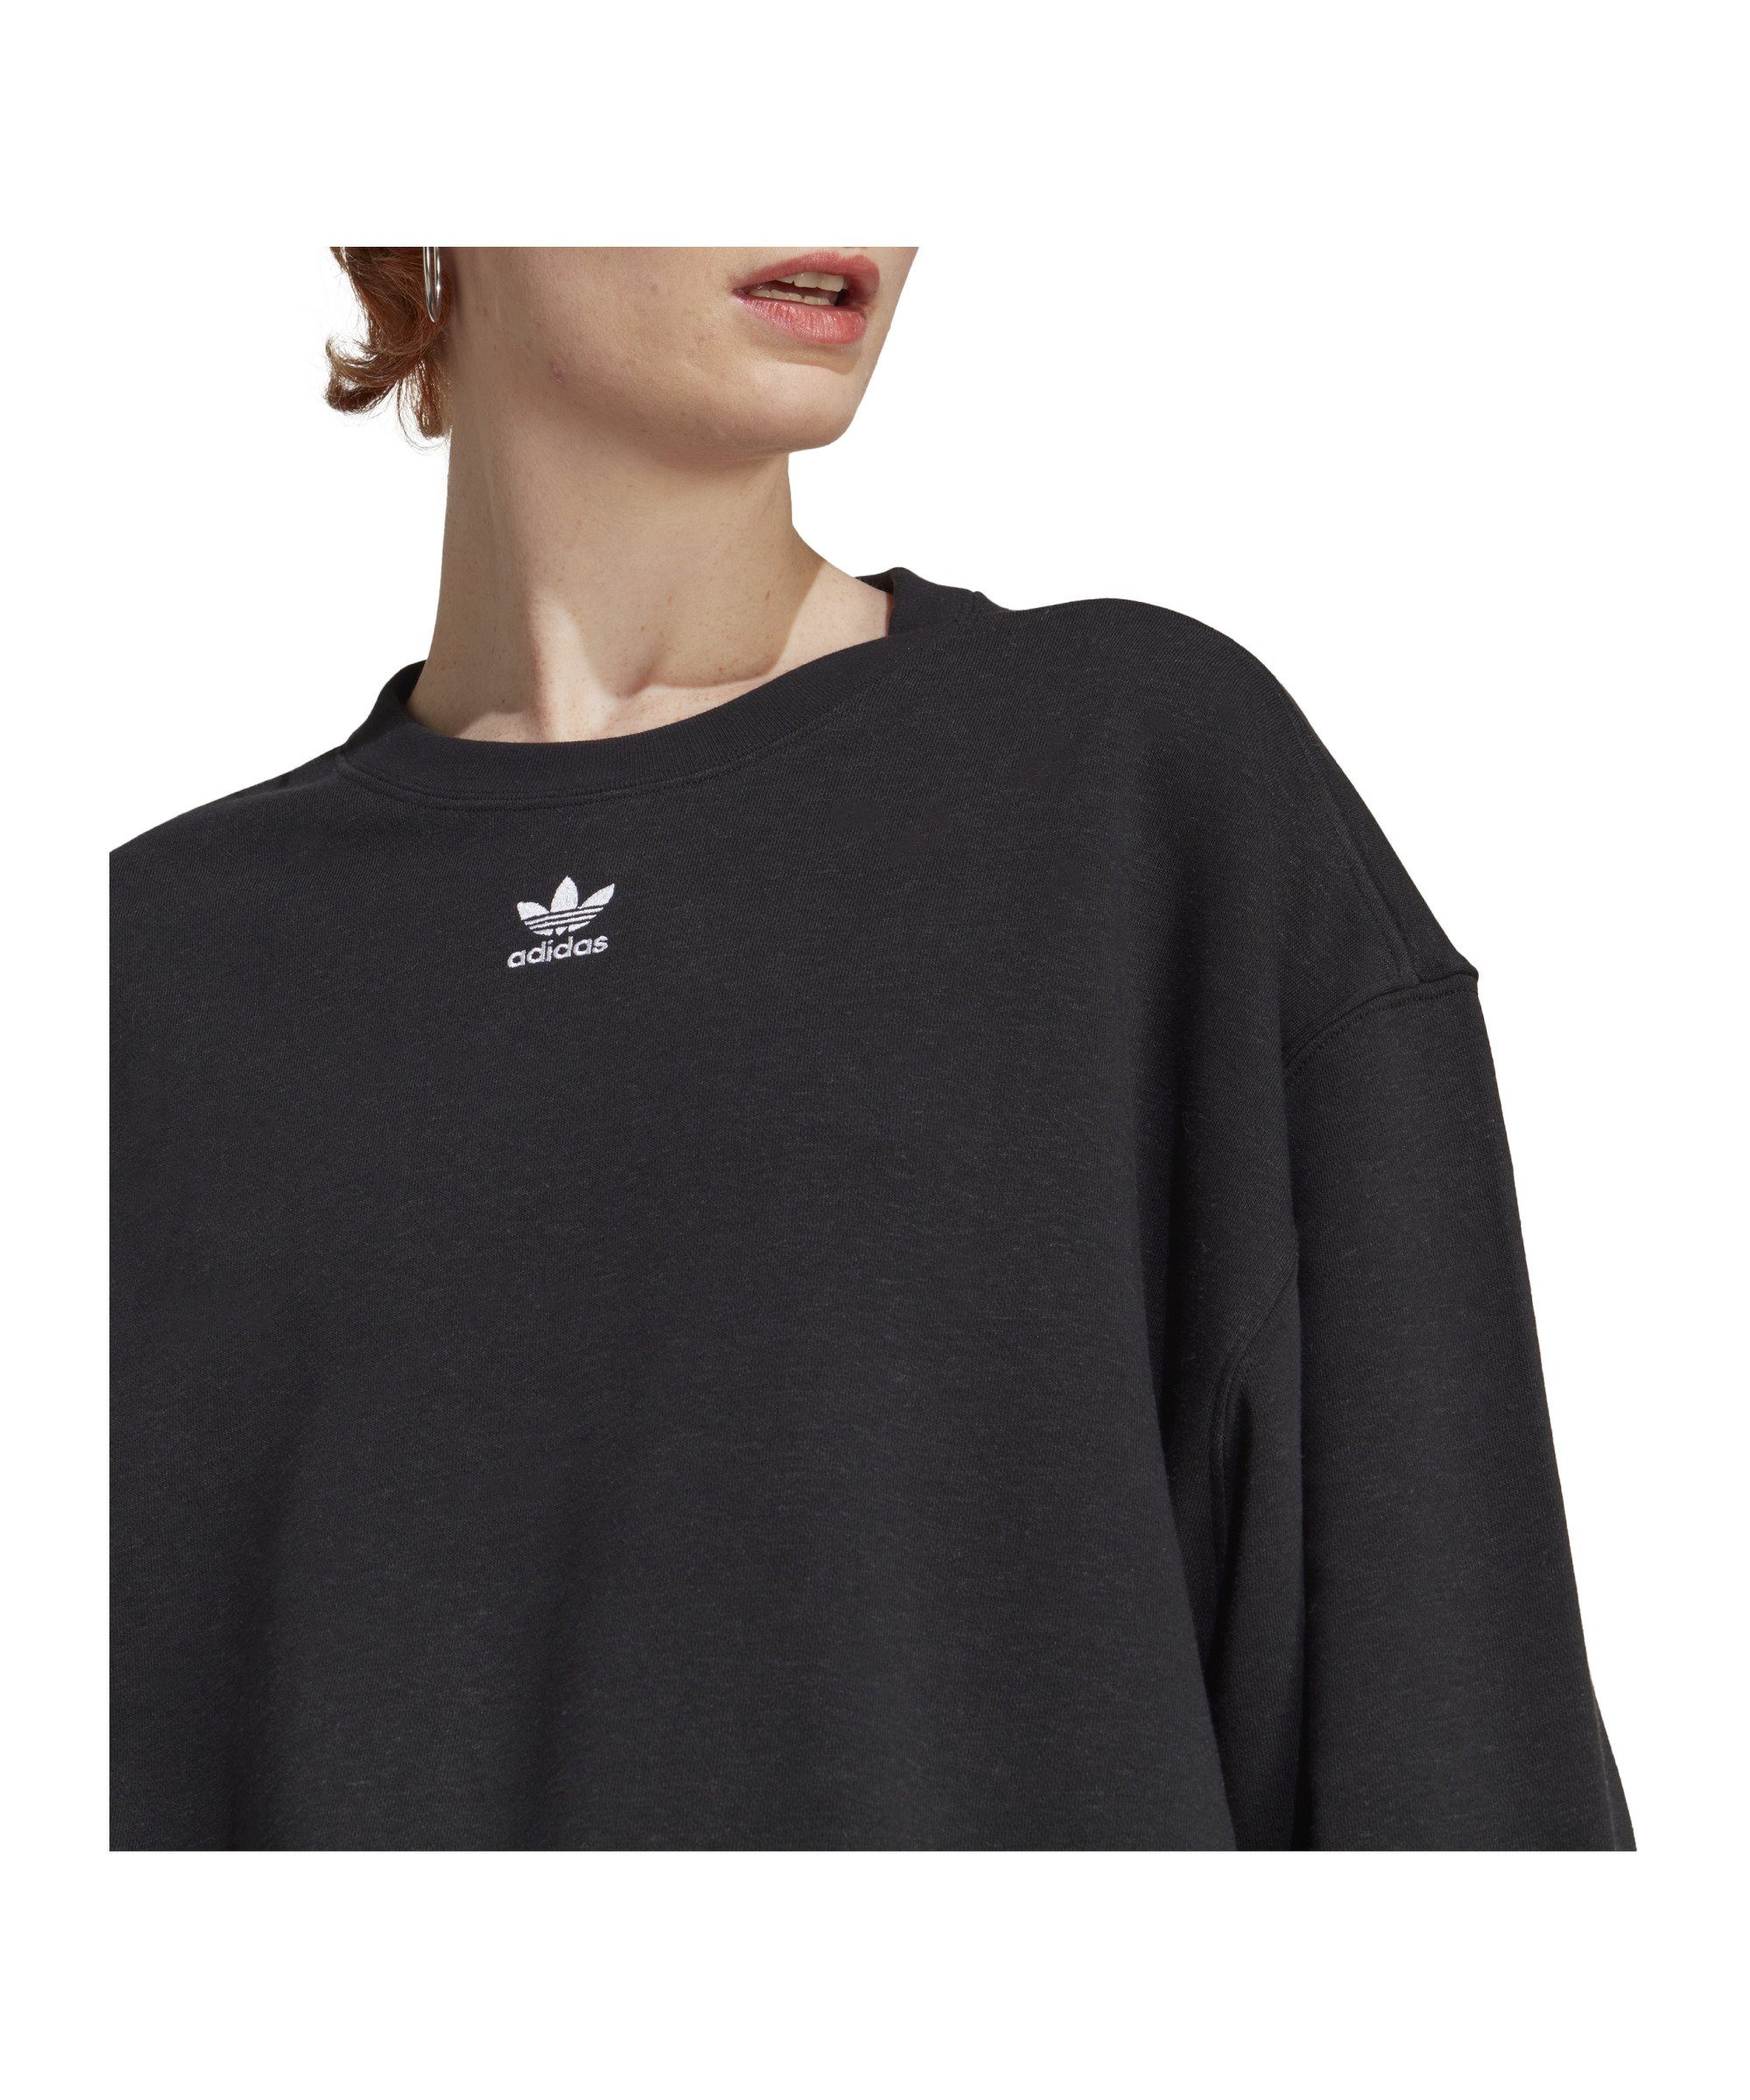 Ess. Damen Sweater Originals schwarz adidas Sweatshirt